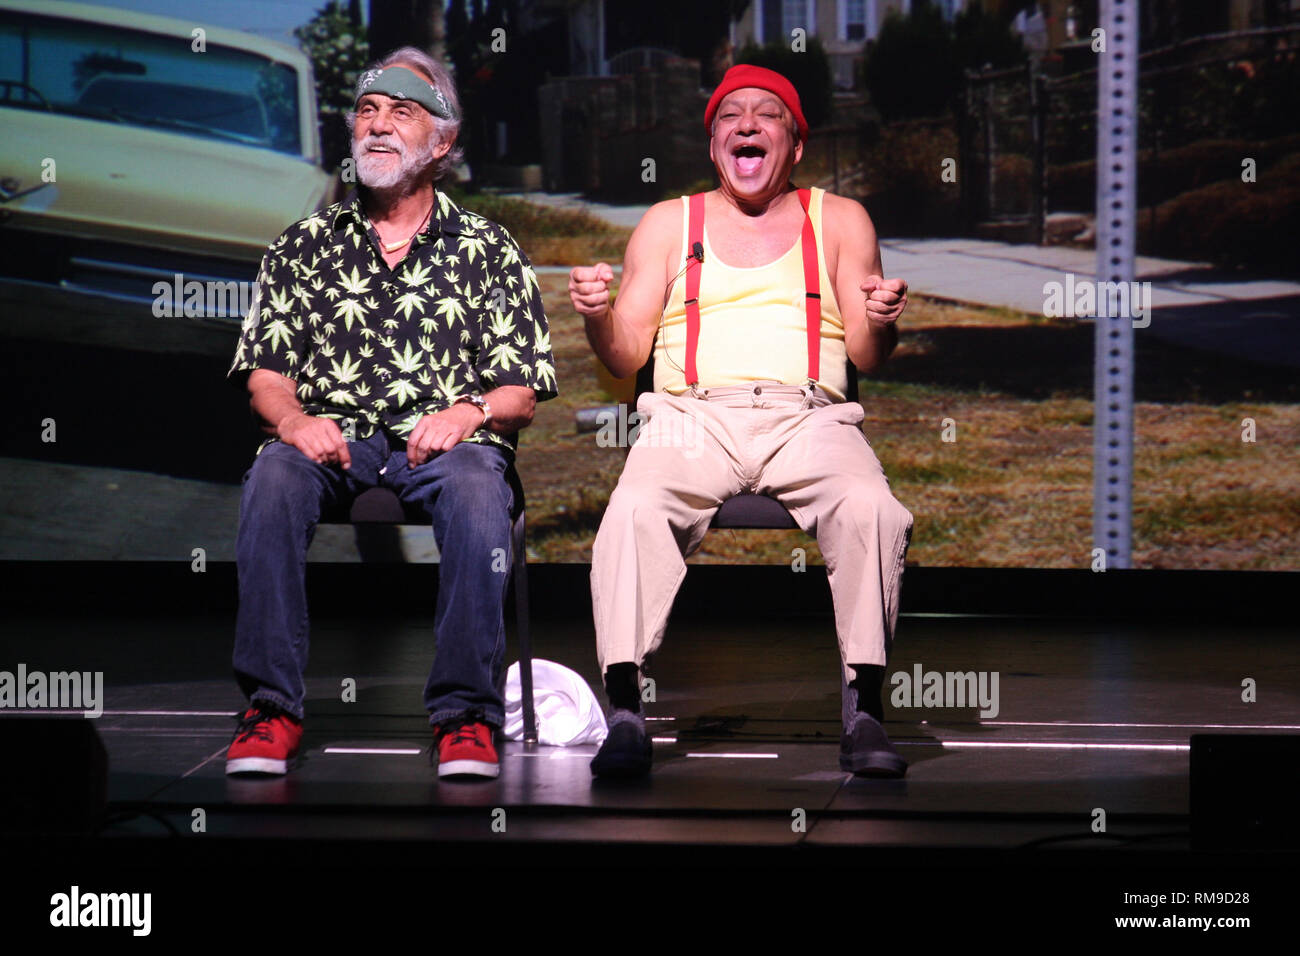 Die Comedy Duo Von Cheech Chong Bestehend Aus Richard Cheech Marin Tommy Chong Dargestellt Auf Der Buhne Wahrend Einer Live Konzert Aussehen Stockfotografie Alamy